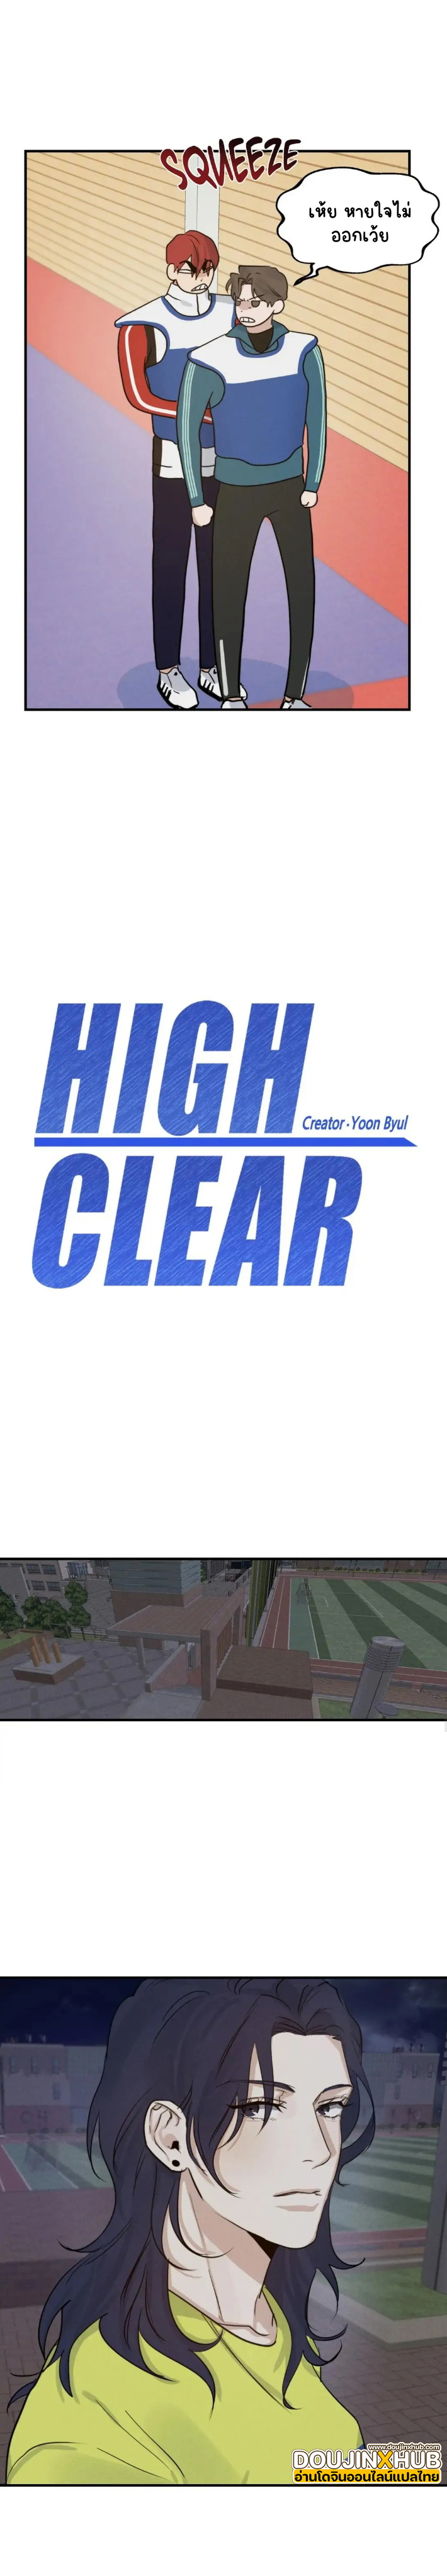 High Clear 8-8